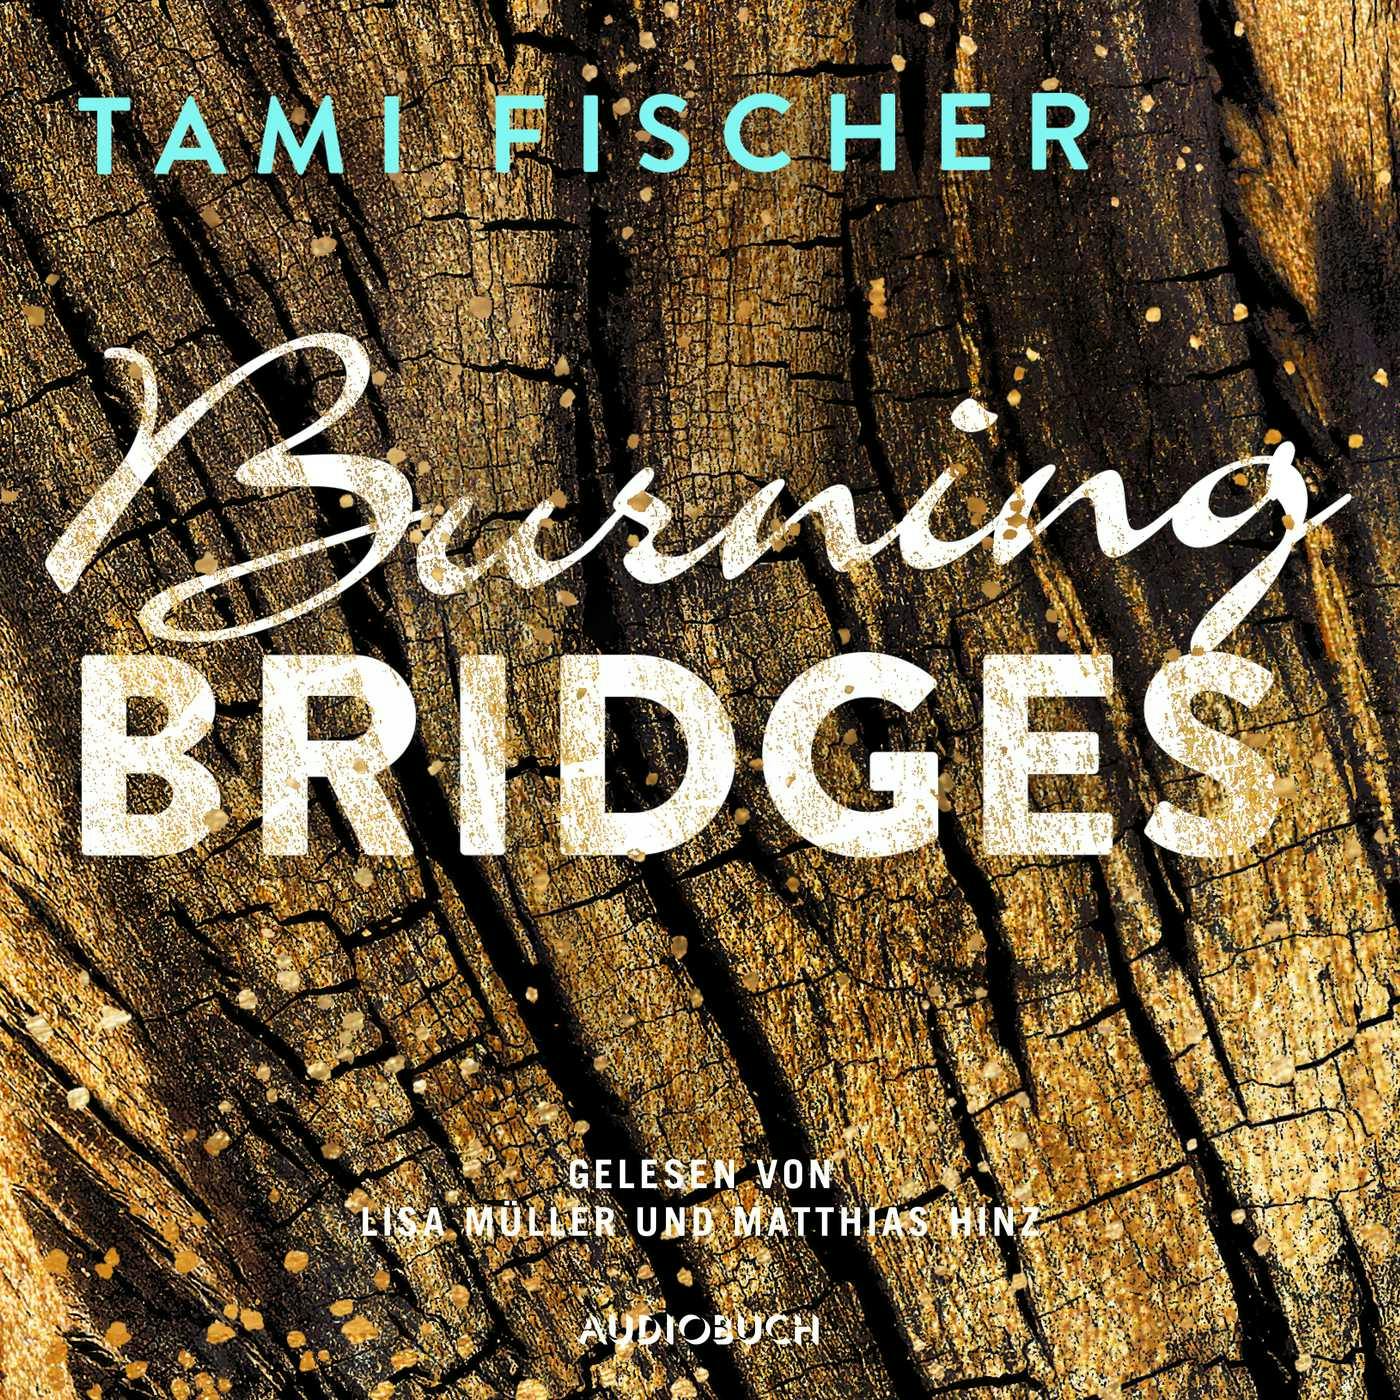 Burning Bridges - Fletcher University 1 (Ungekürzt) - Tami Fischer